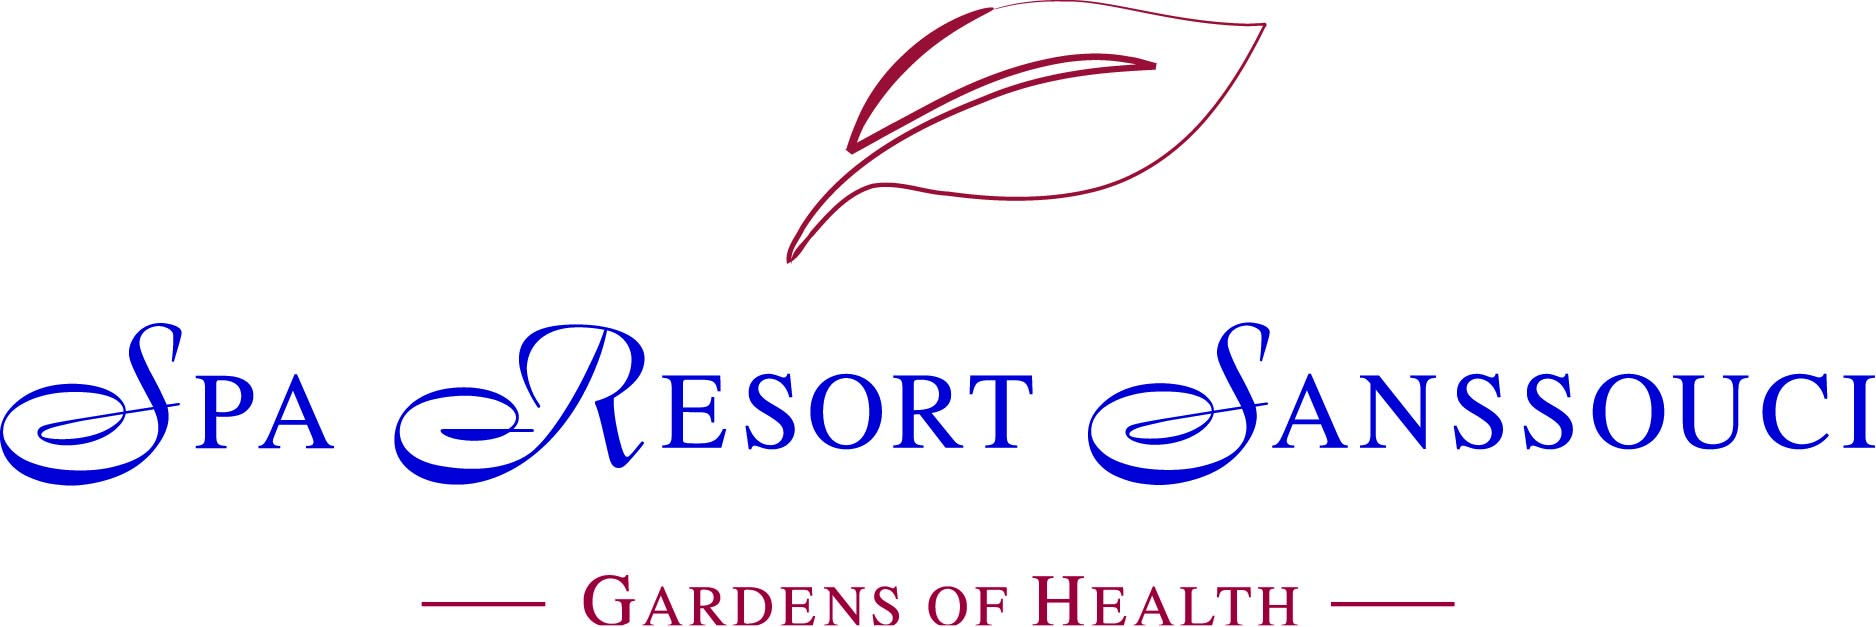 logo-spa resort sanssouci.jpg (674 KB)